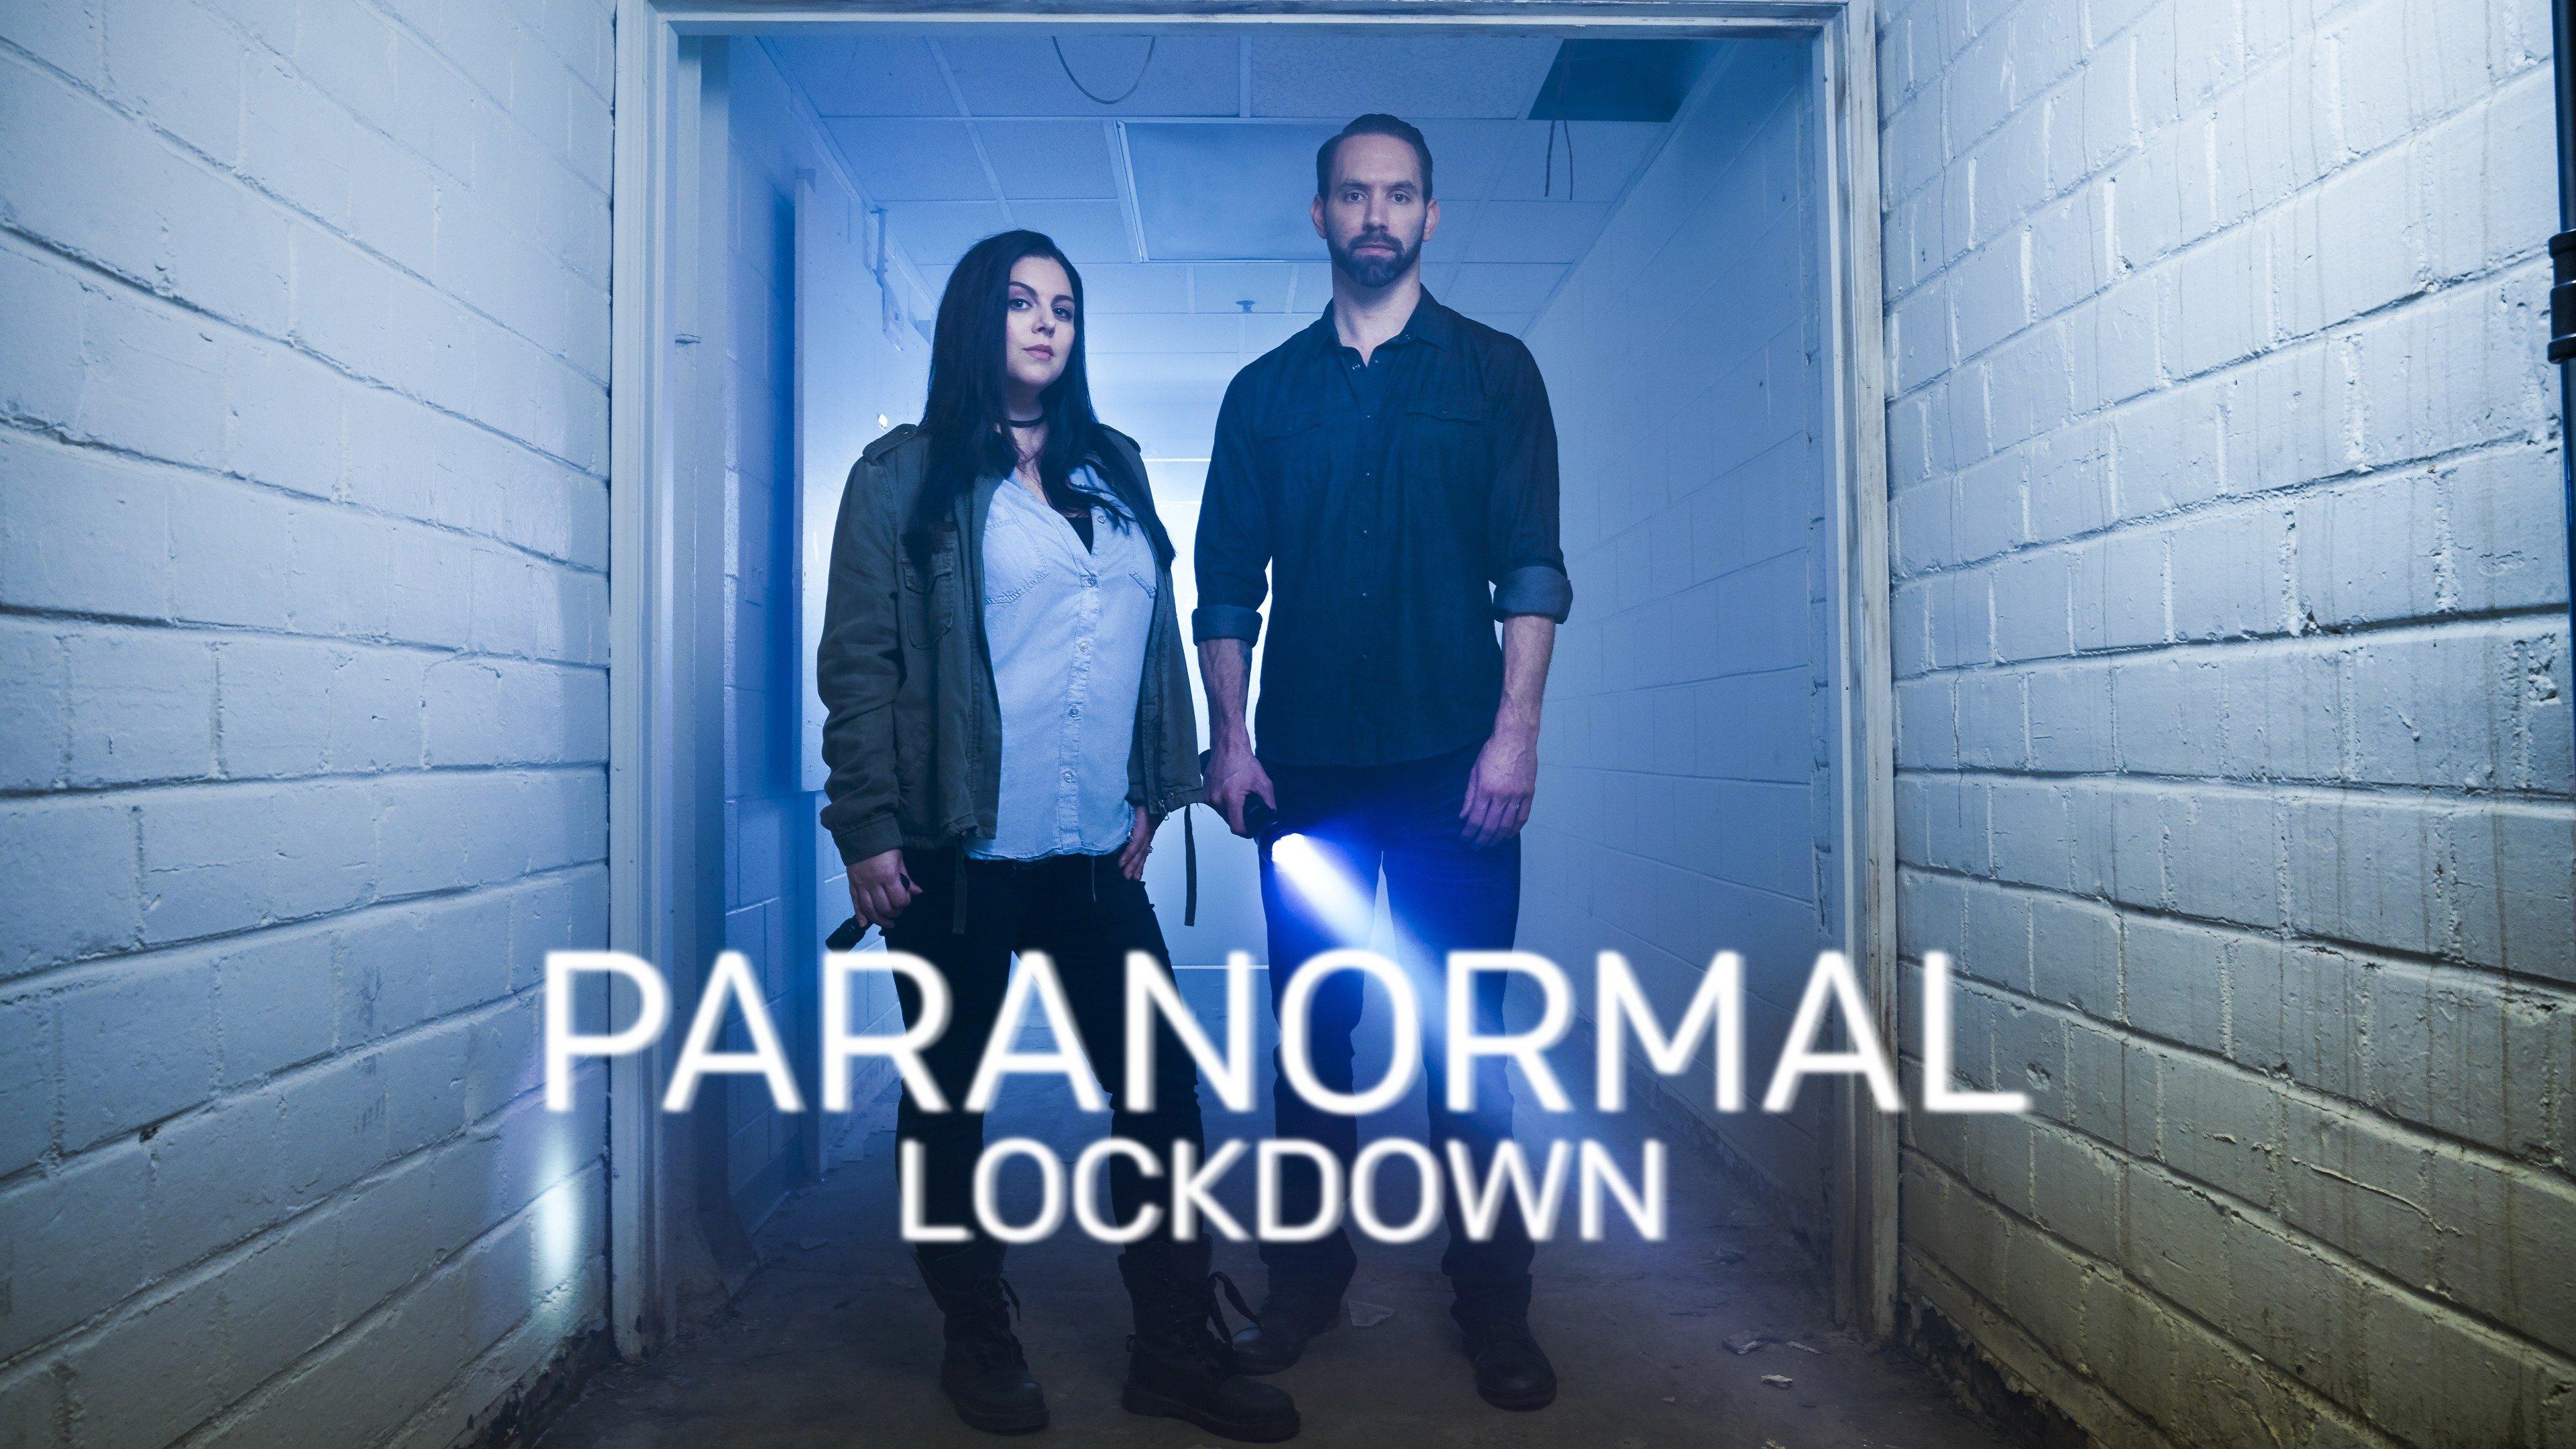 paranormal lockdown torrent